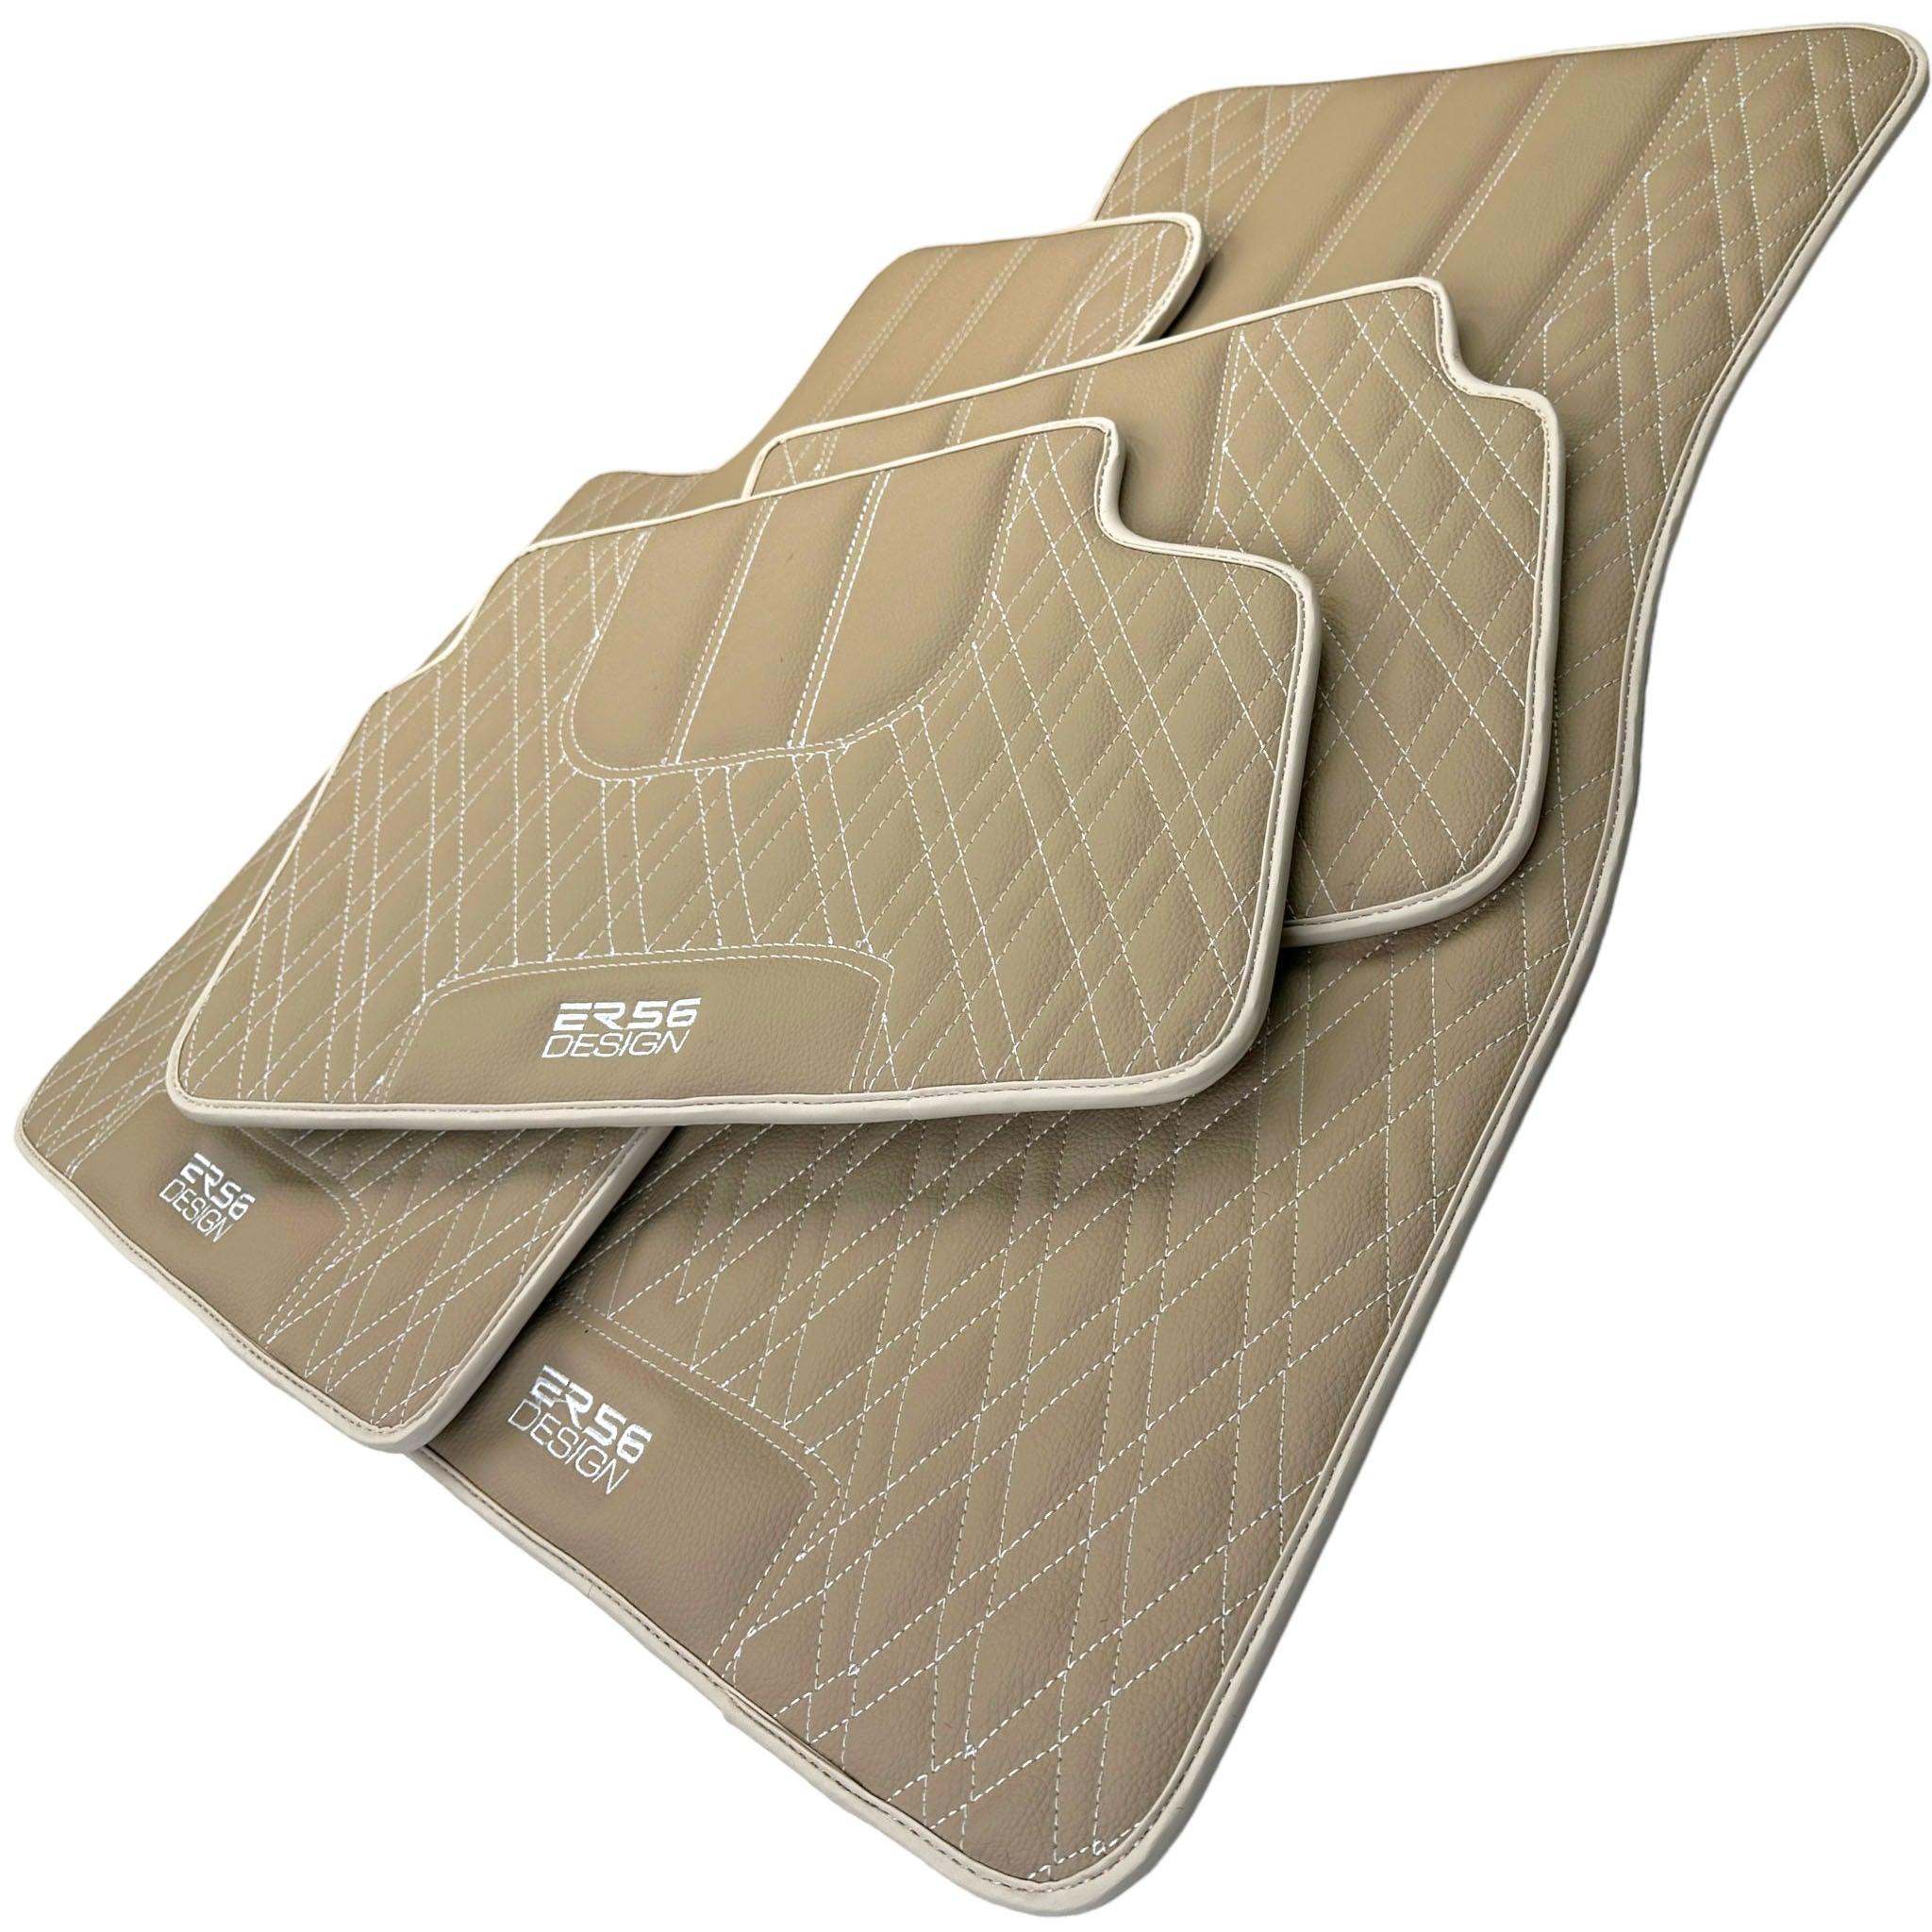 Beige Leather Floor Floor Mats For BMW X3 Series F25